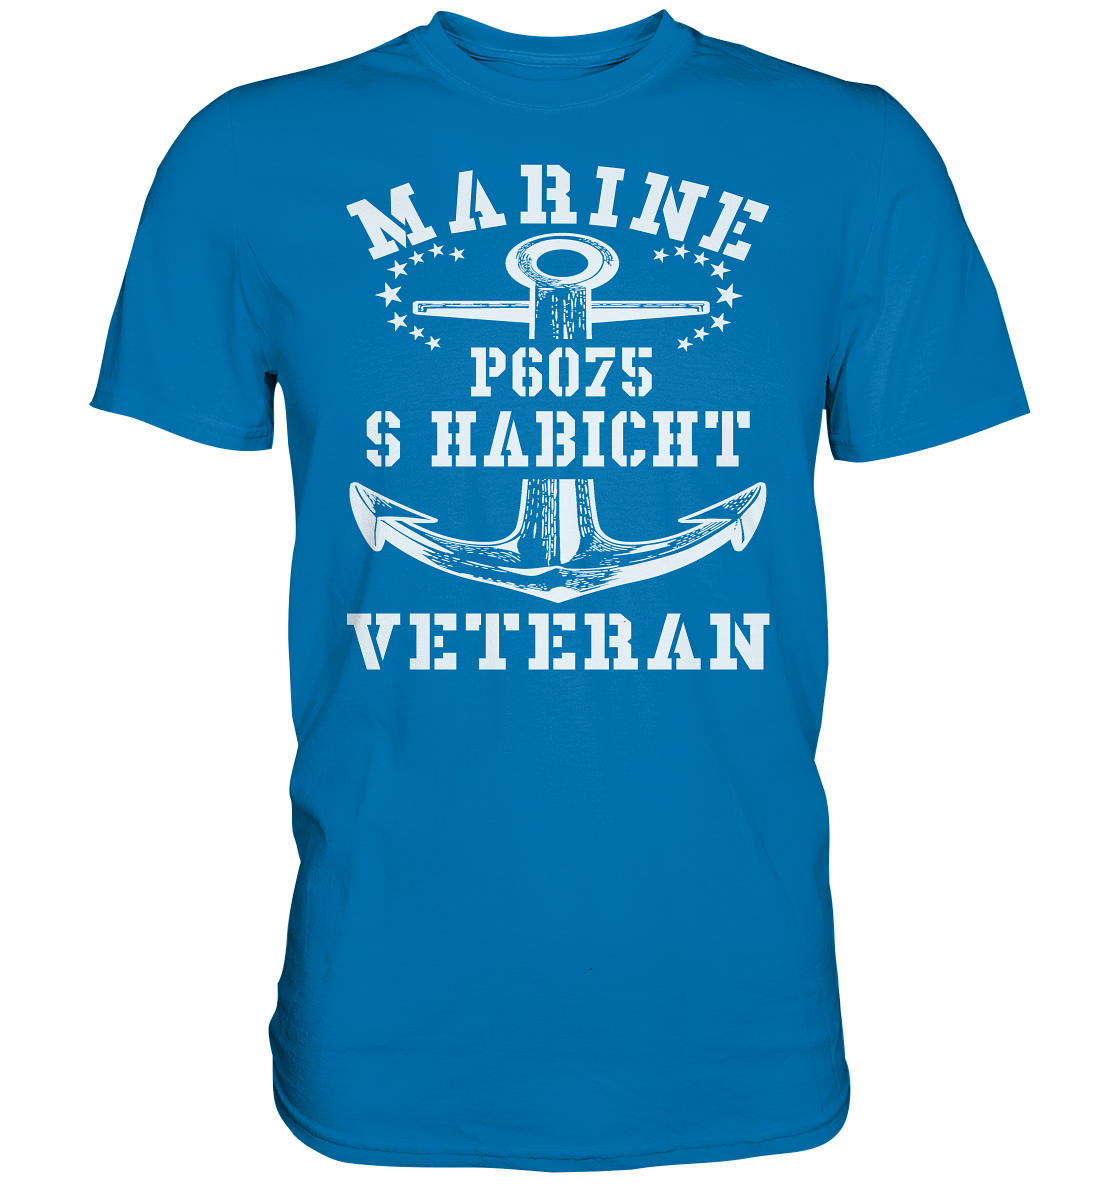 P6075 S HABICHT Marine Veteran - Premium Shirt